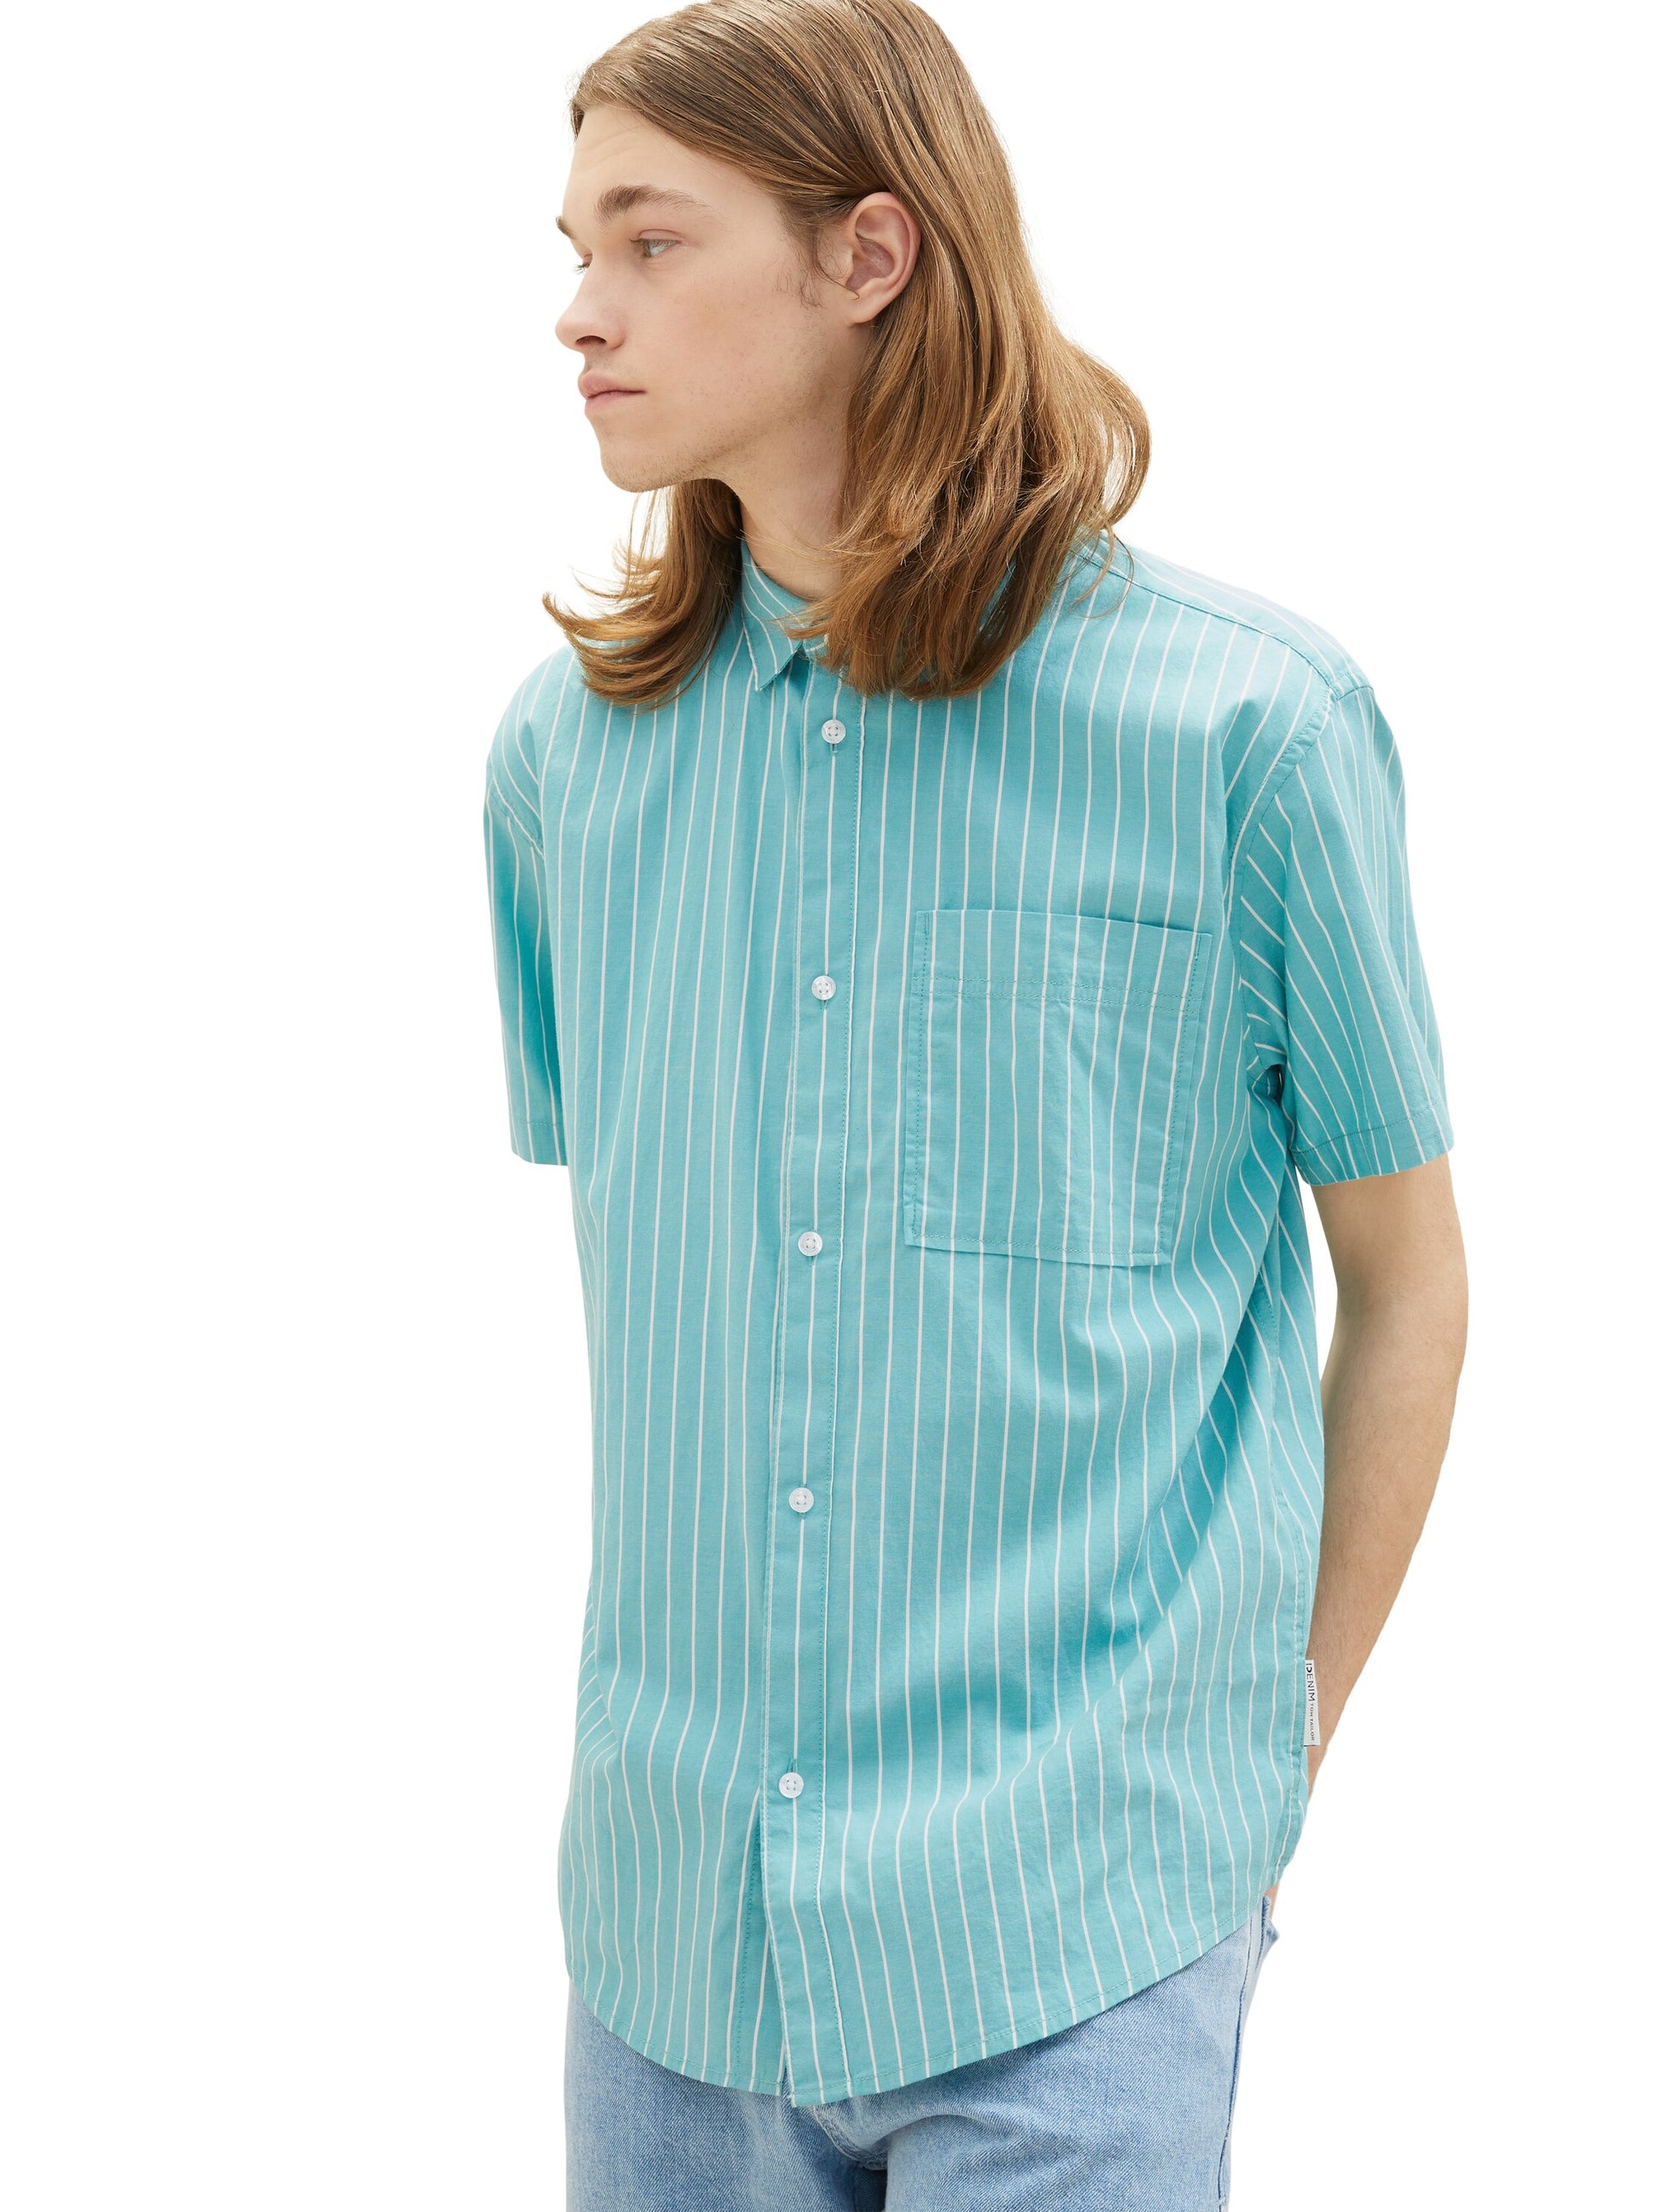 shirt – Modehaus Blum-Jundt striped relaxed